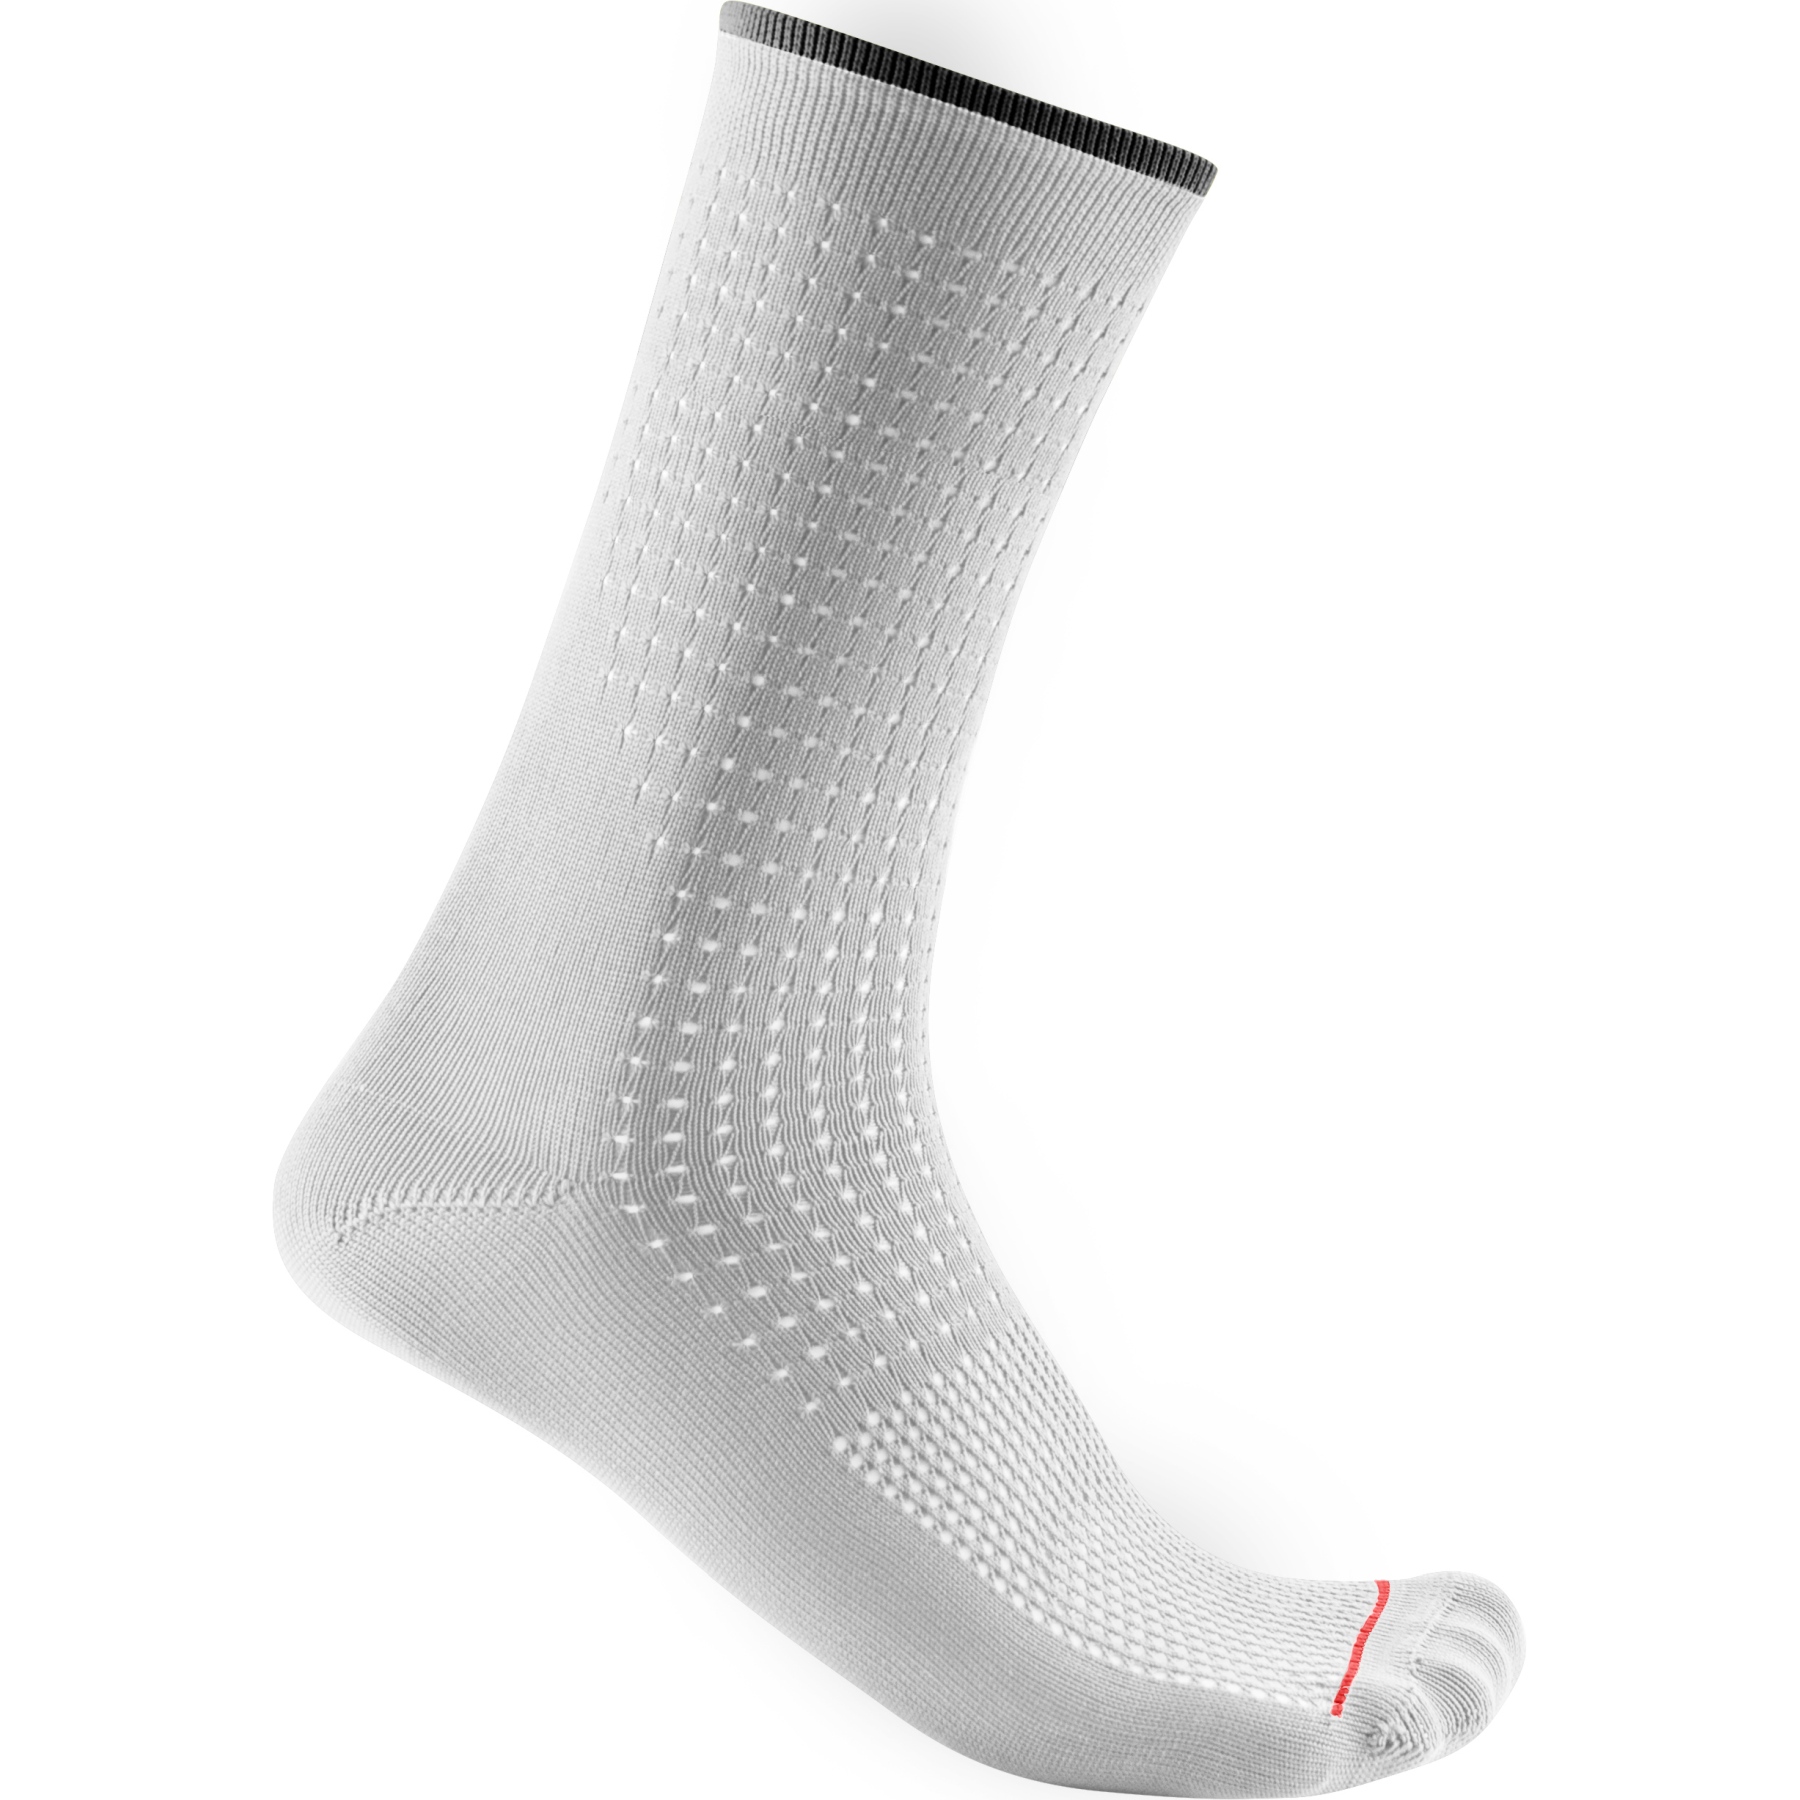 Produktbild von Castelli Premio 18 Socken - weiß 001